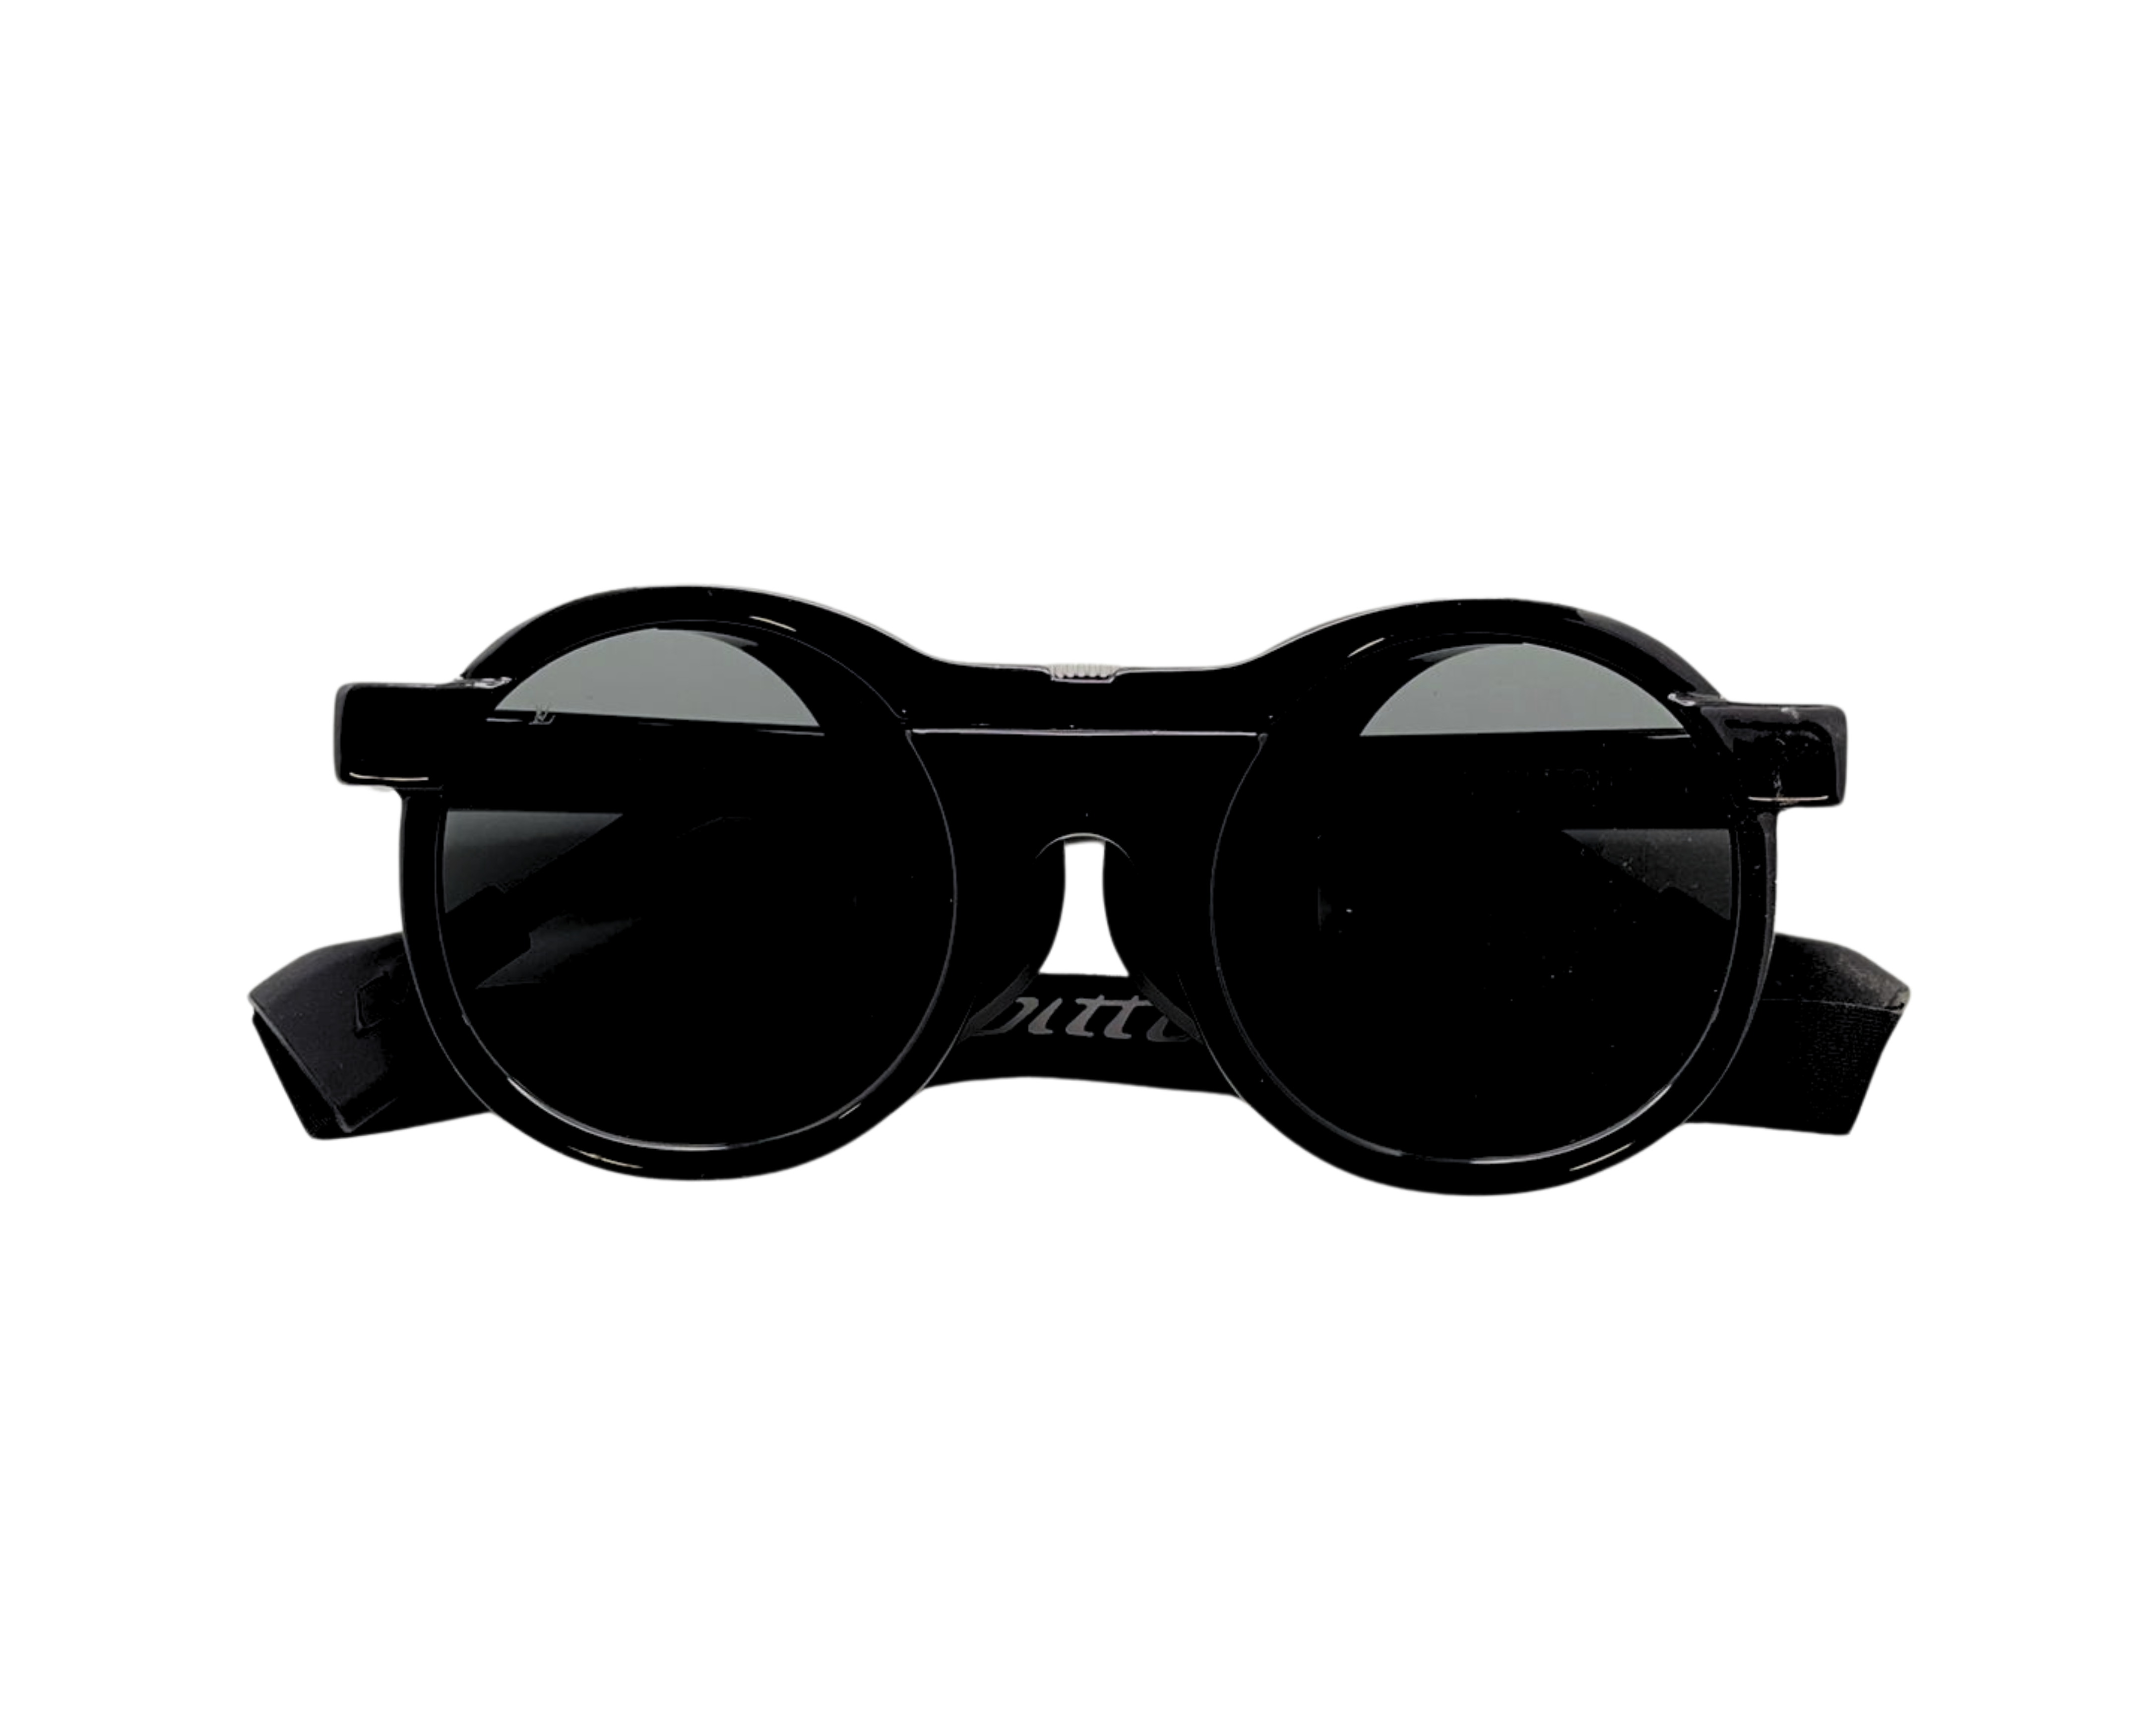 NS Luxury - 1319 - Black - Sunglasses